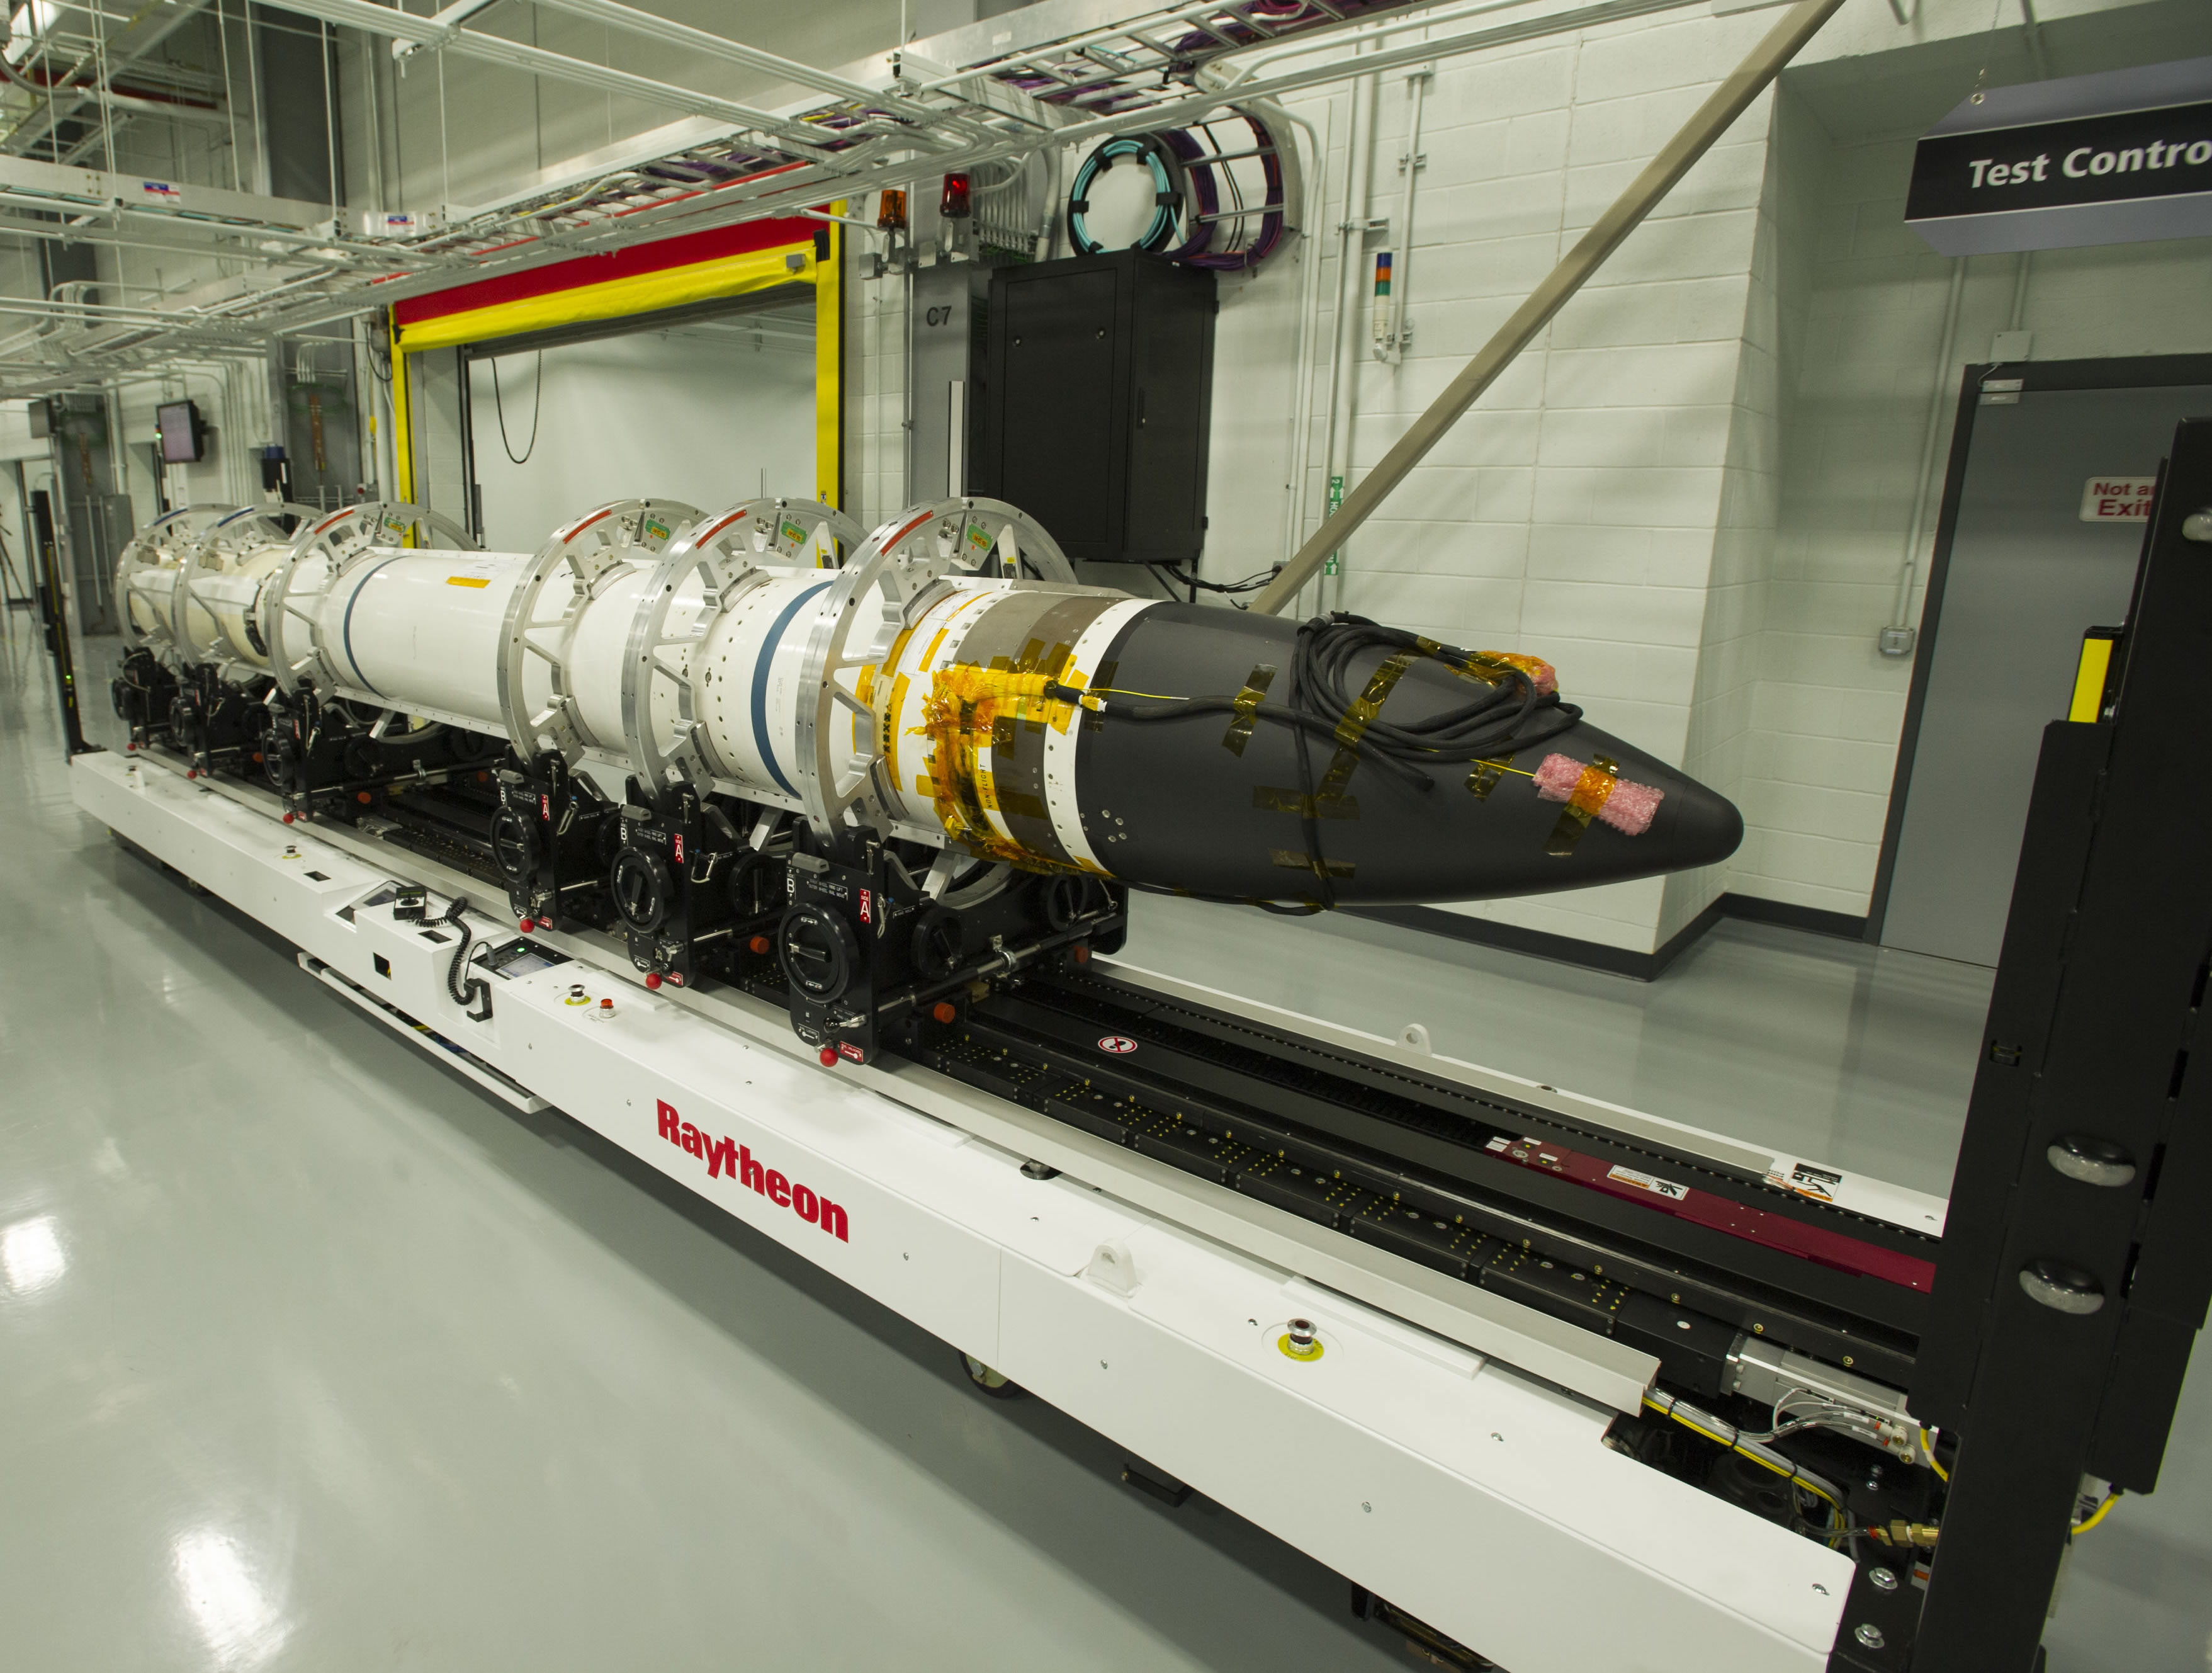 A Raytheon SM-3® Block IIA rakétája, mely az európai védelmi rendszerek egyik központi eleme lesz 2018-tól. Kép forrása: Raytheon